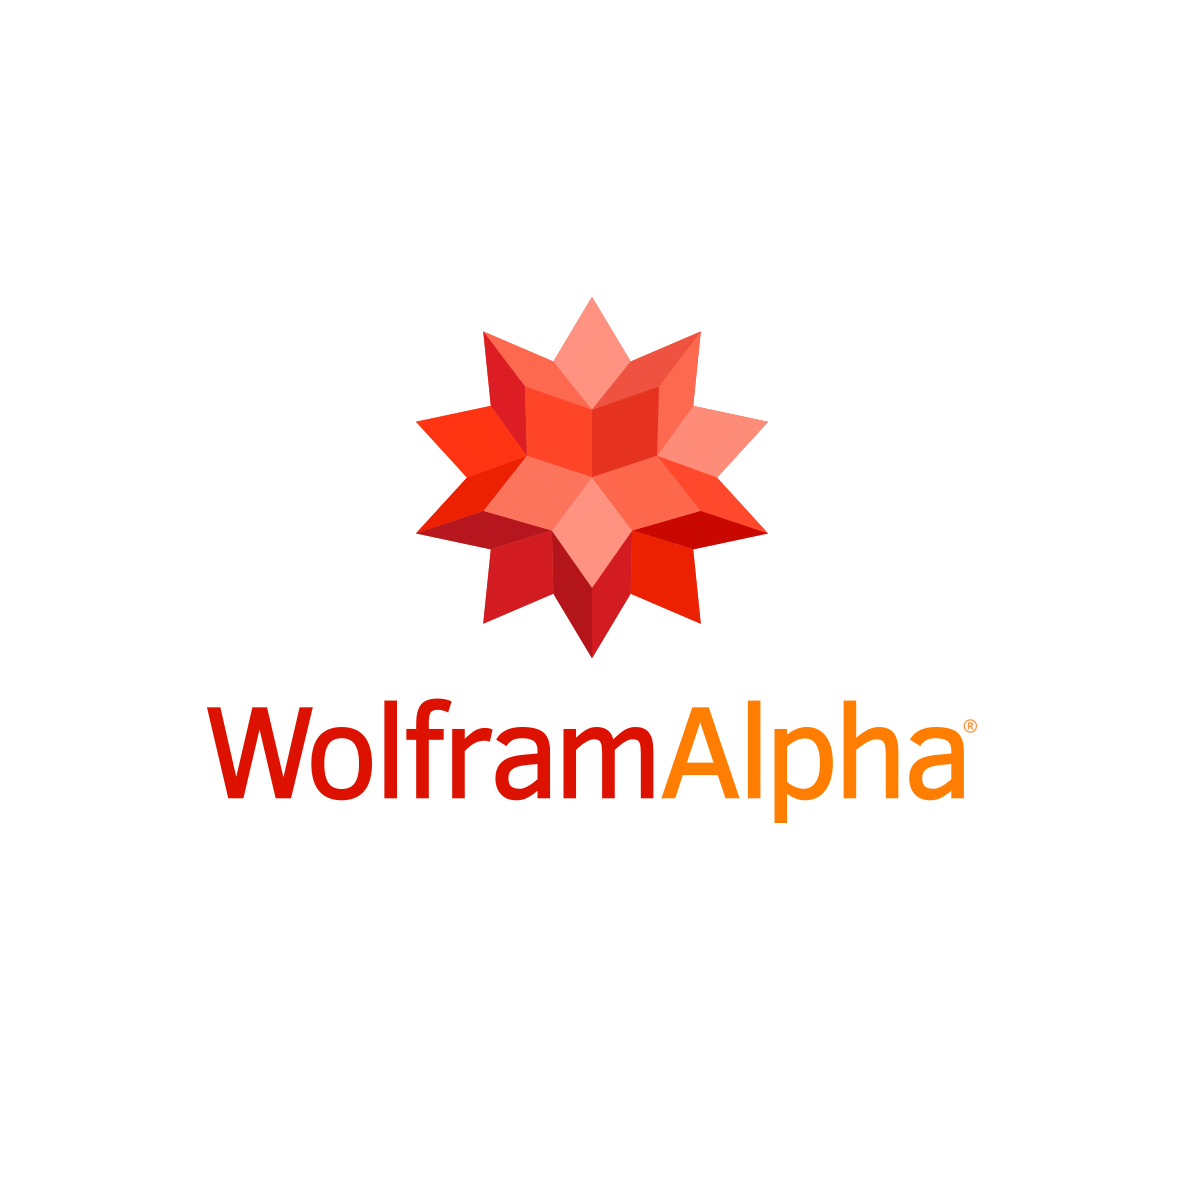 4 light ms - Wolfram|Alpha